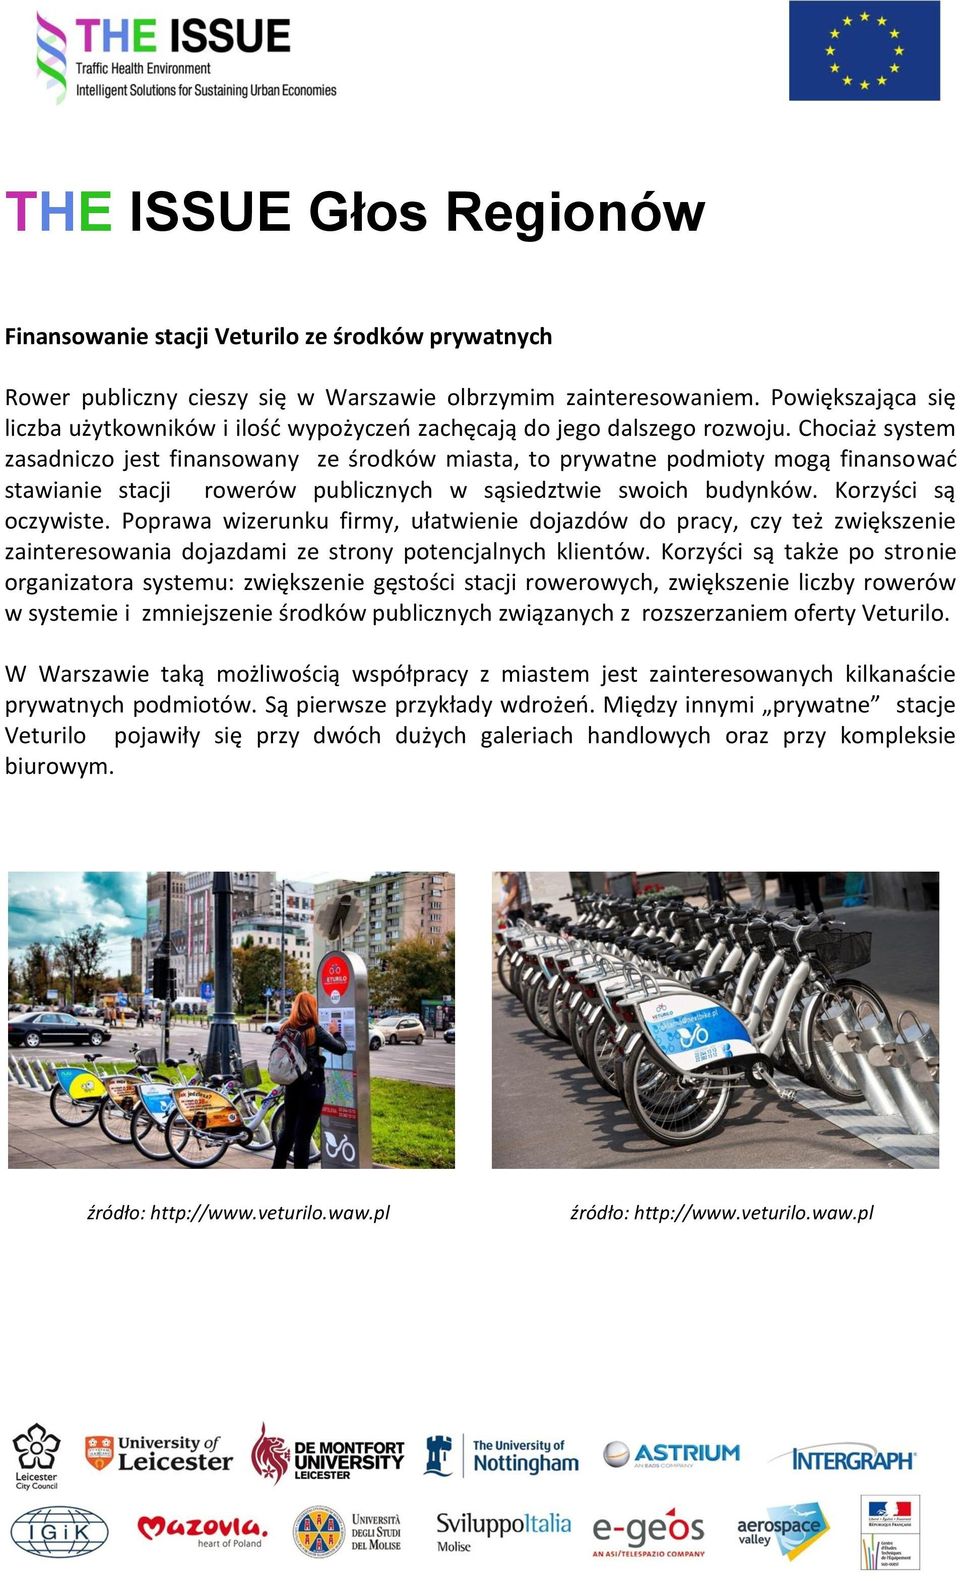 Chociaż system zasadniczo jest finansowany ze środków miasta, to prywatne podmioty mogą finansować stawianie stacji rowerów publicznych w sąsiedztwie swoich budynków. Korzyści są oczywiste.